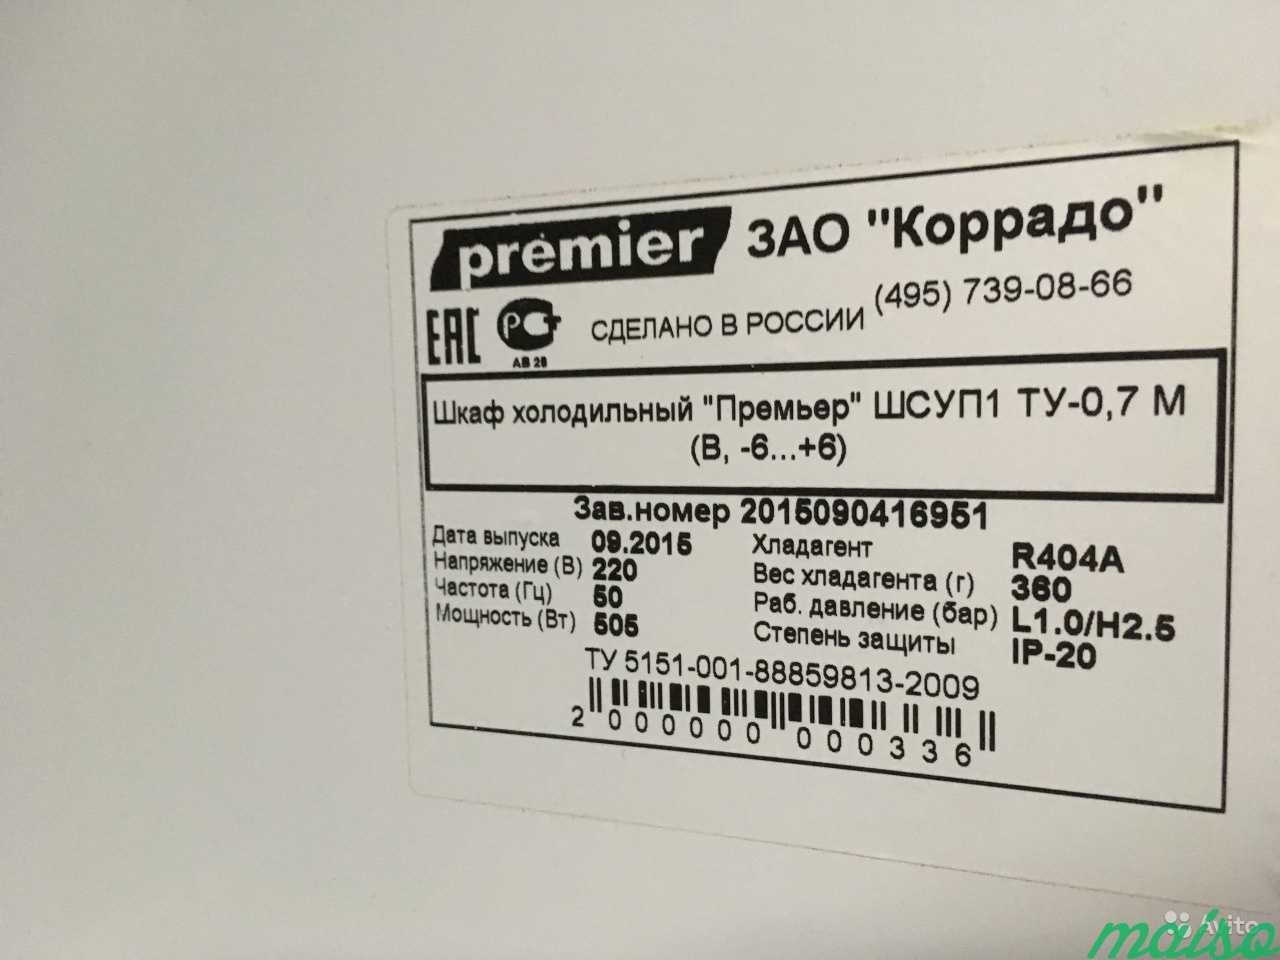 Холодильный шкаф премьер шсуп1ту-0,7М в Москве. Фото 4